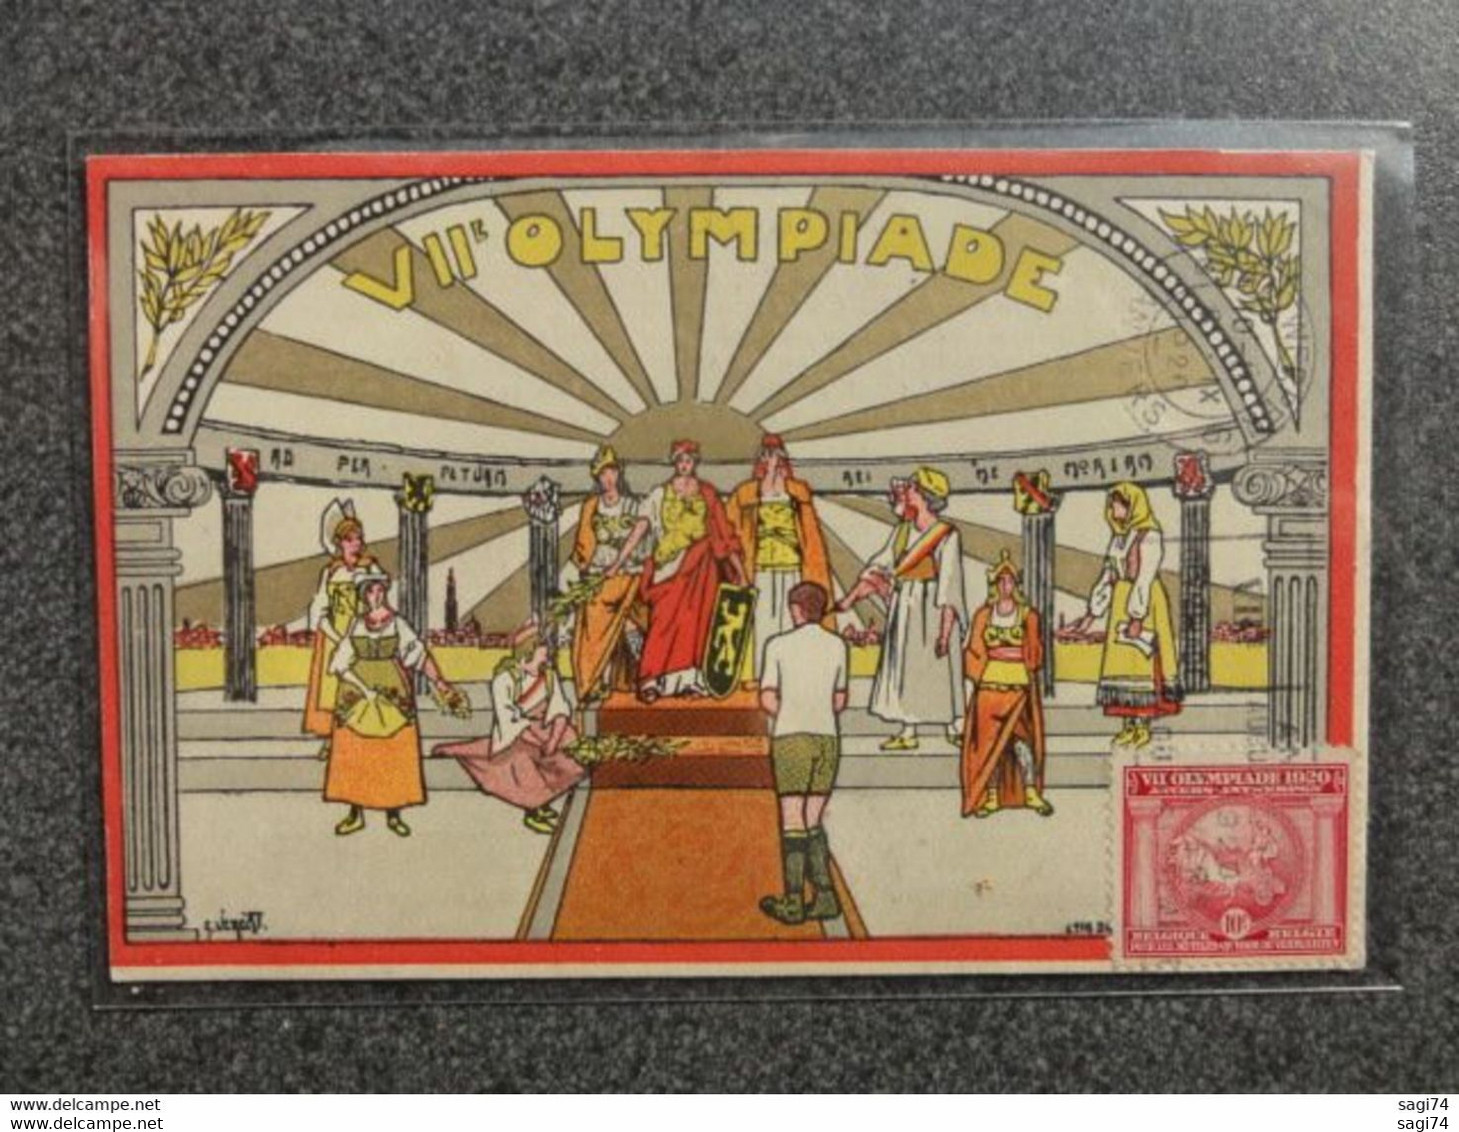 Antwerpen / Anvers, Zeldzame Collectie van 5 zeldzame kaarten door Illustrateur Verelst, Olympics /Olympiade 1920 (info)